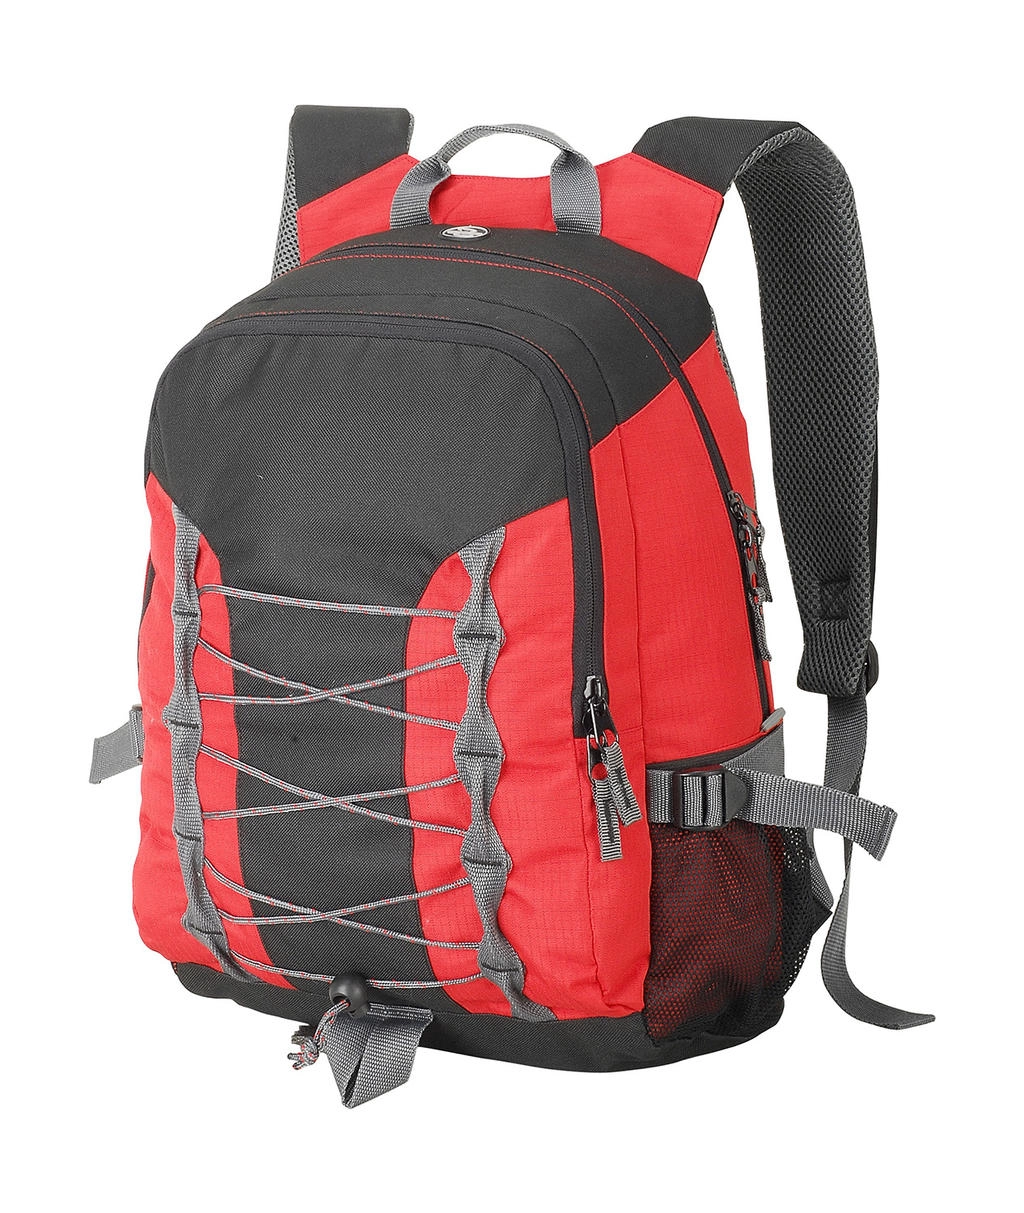 Miami Backpack zum Besticken und Bedrucken in der Farbe Red/Black/Dark Grey mit Ihren Logo, Schriftzug oder Motiv.